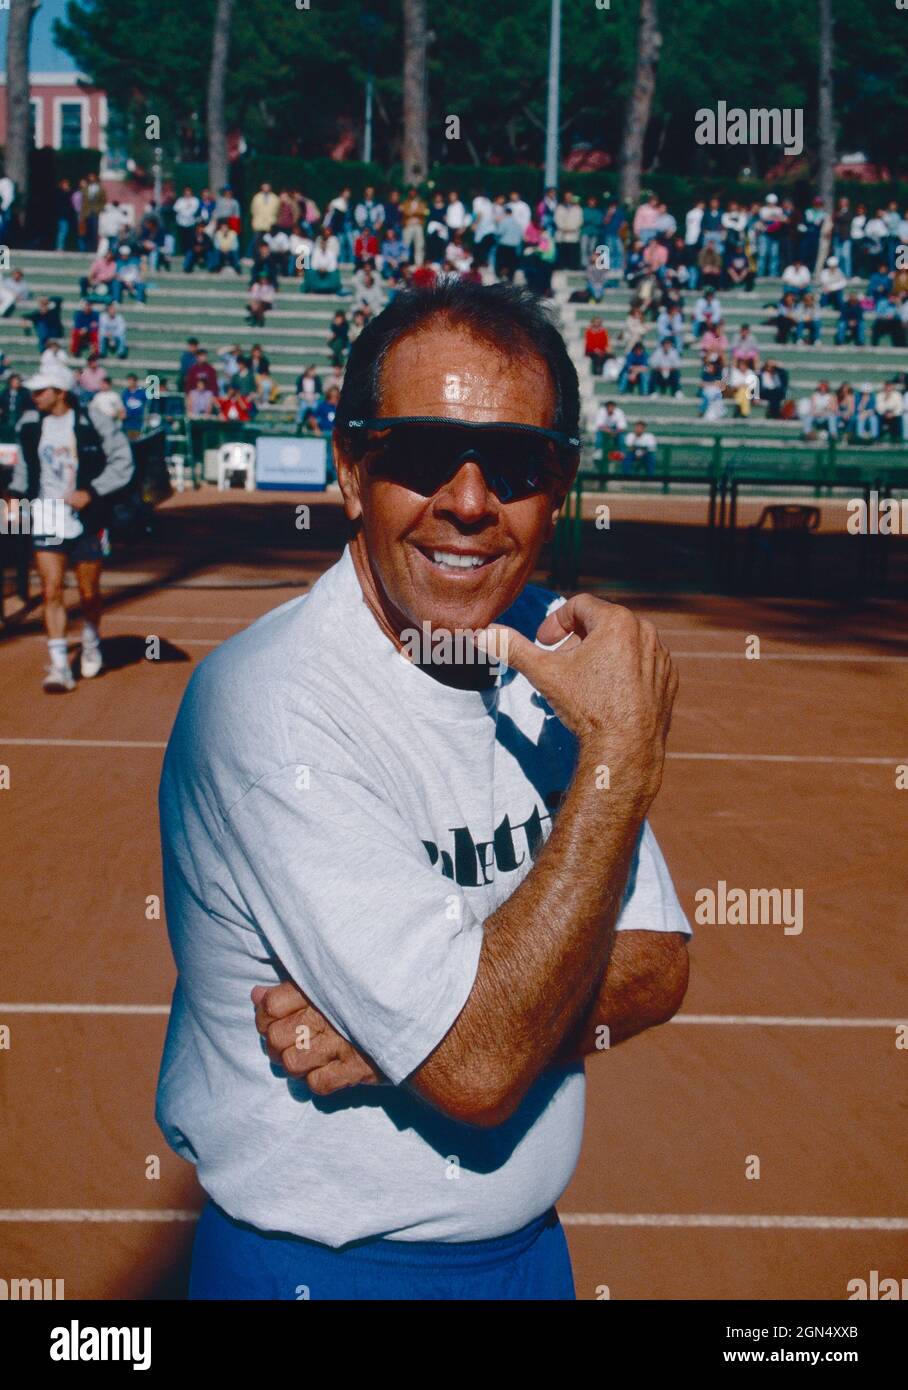 Nick Bollettieri, entraîneur américain de tennis, années 1990 Banque D'Images